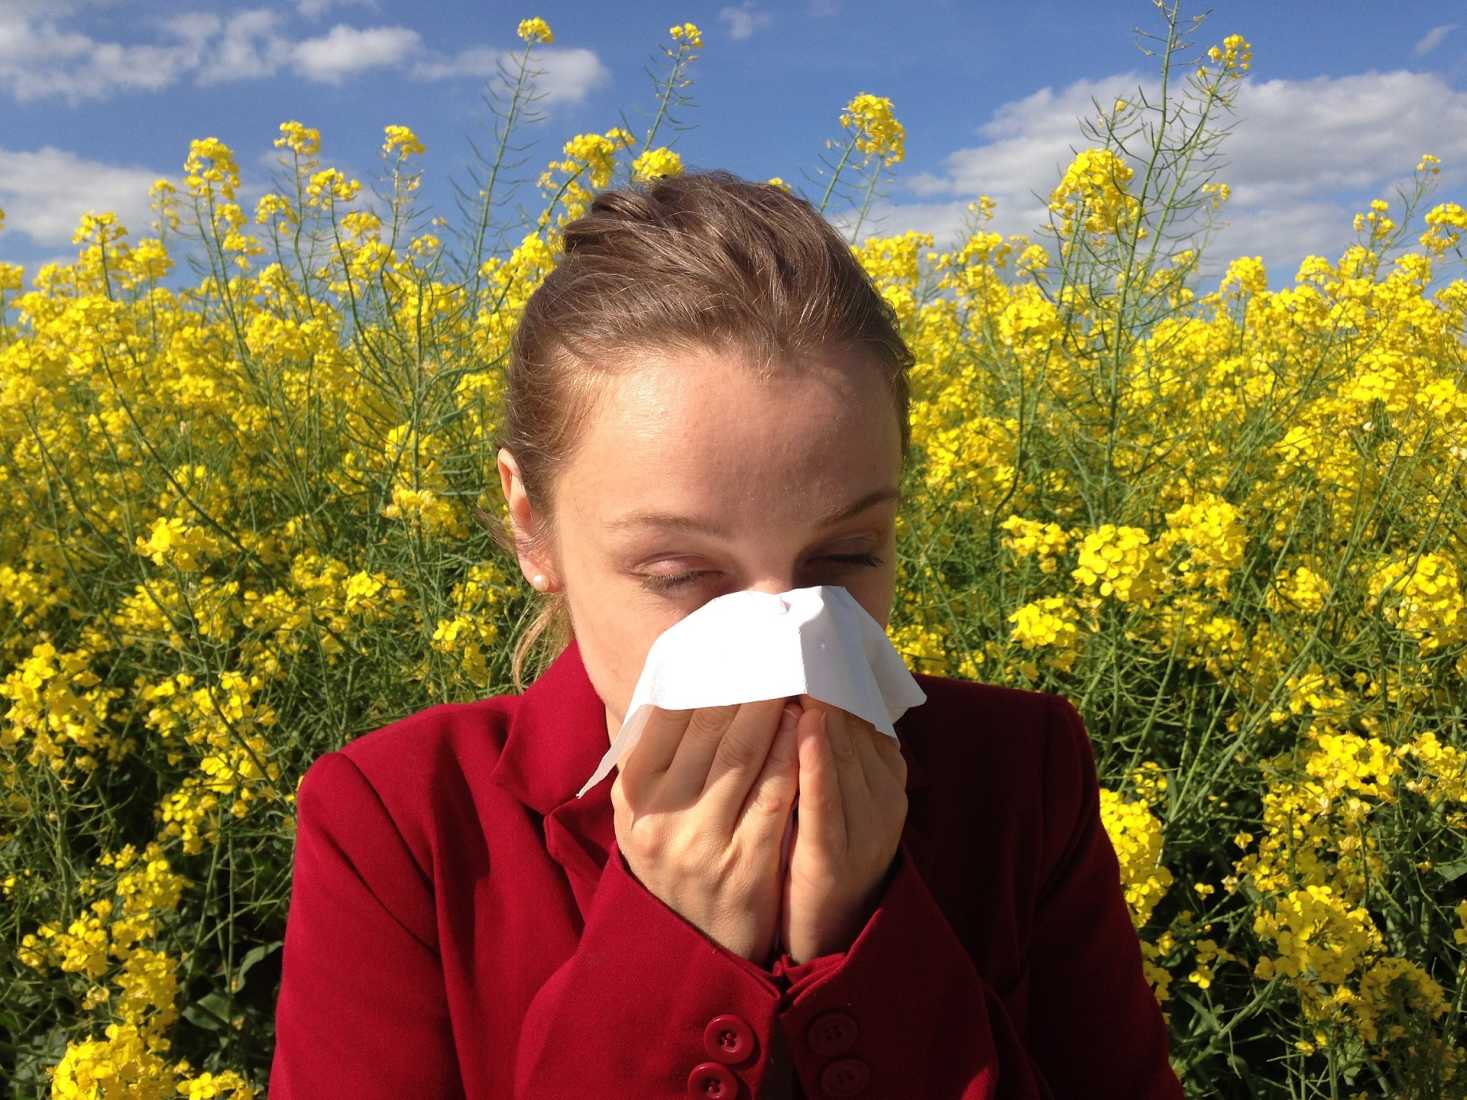 jak-sobie-poradzic-z-alergia-poznaj-5-sprawdzonych-sposobow